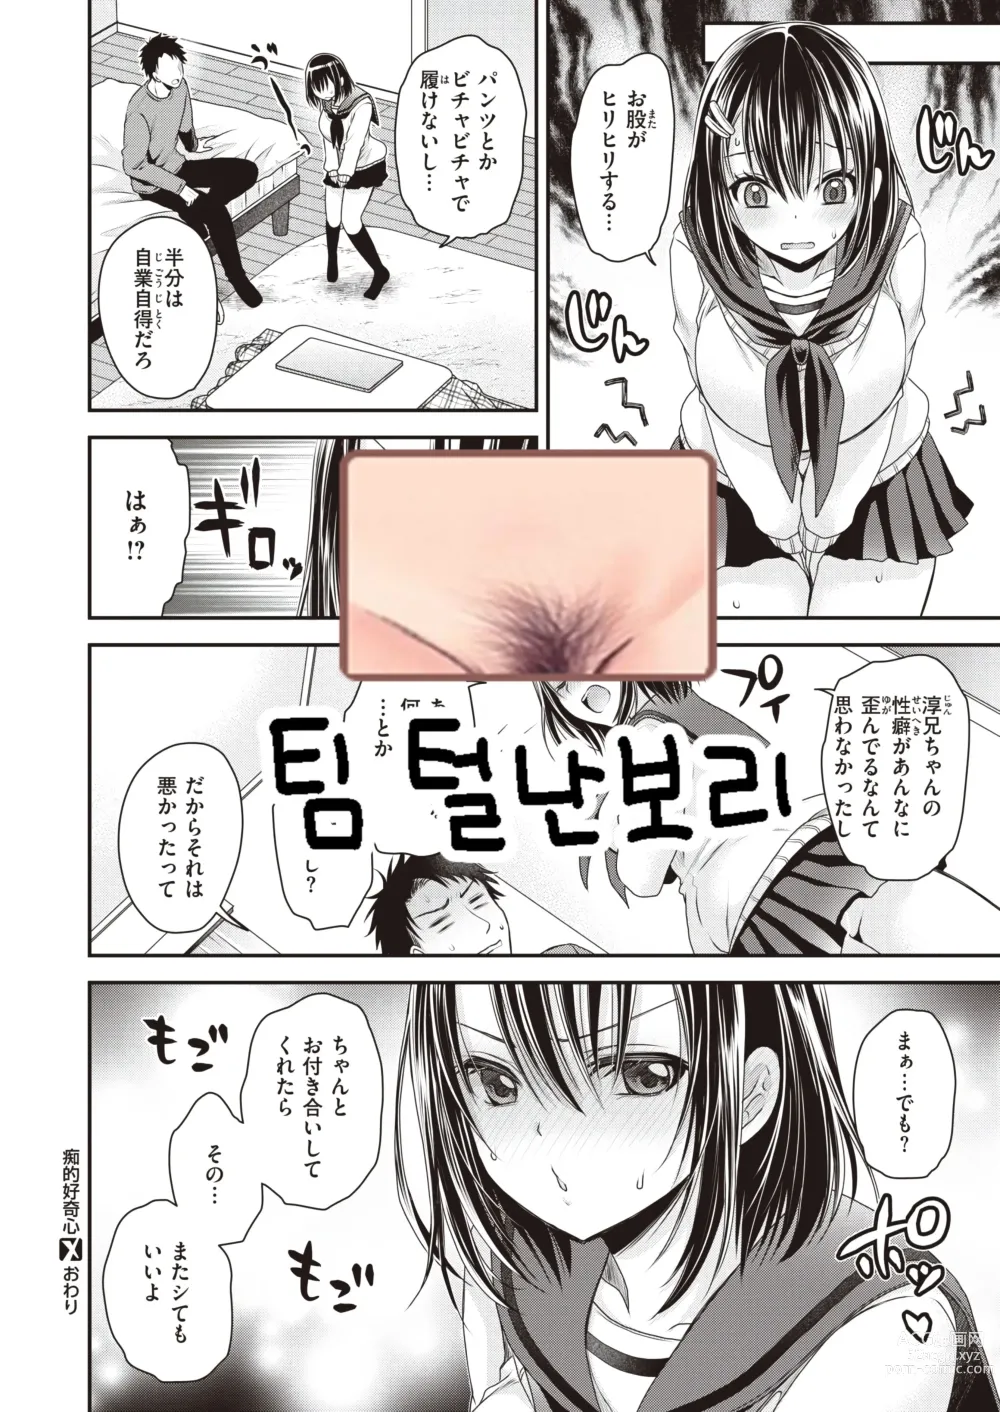 Page 21 of manga Chiteki Koukishin